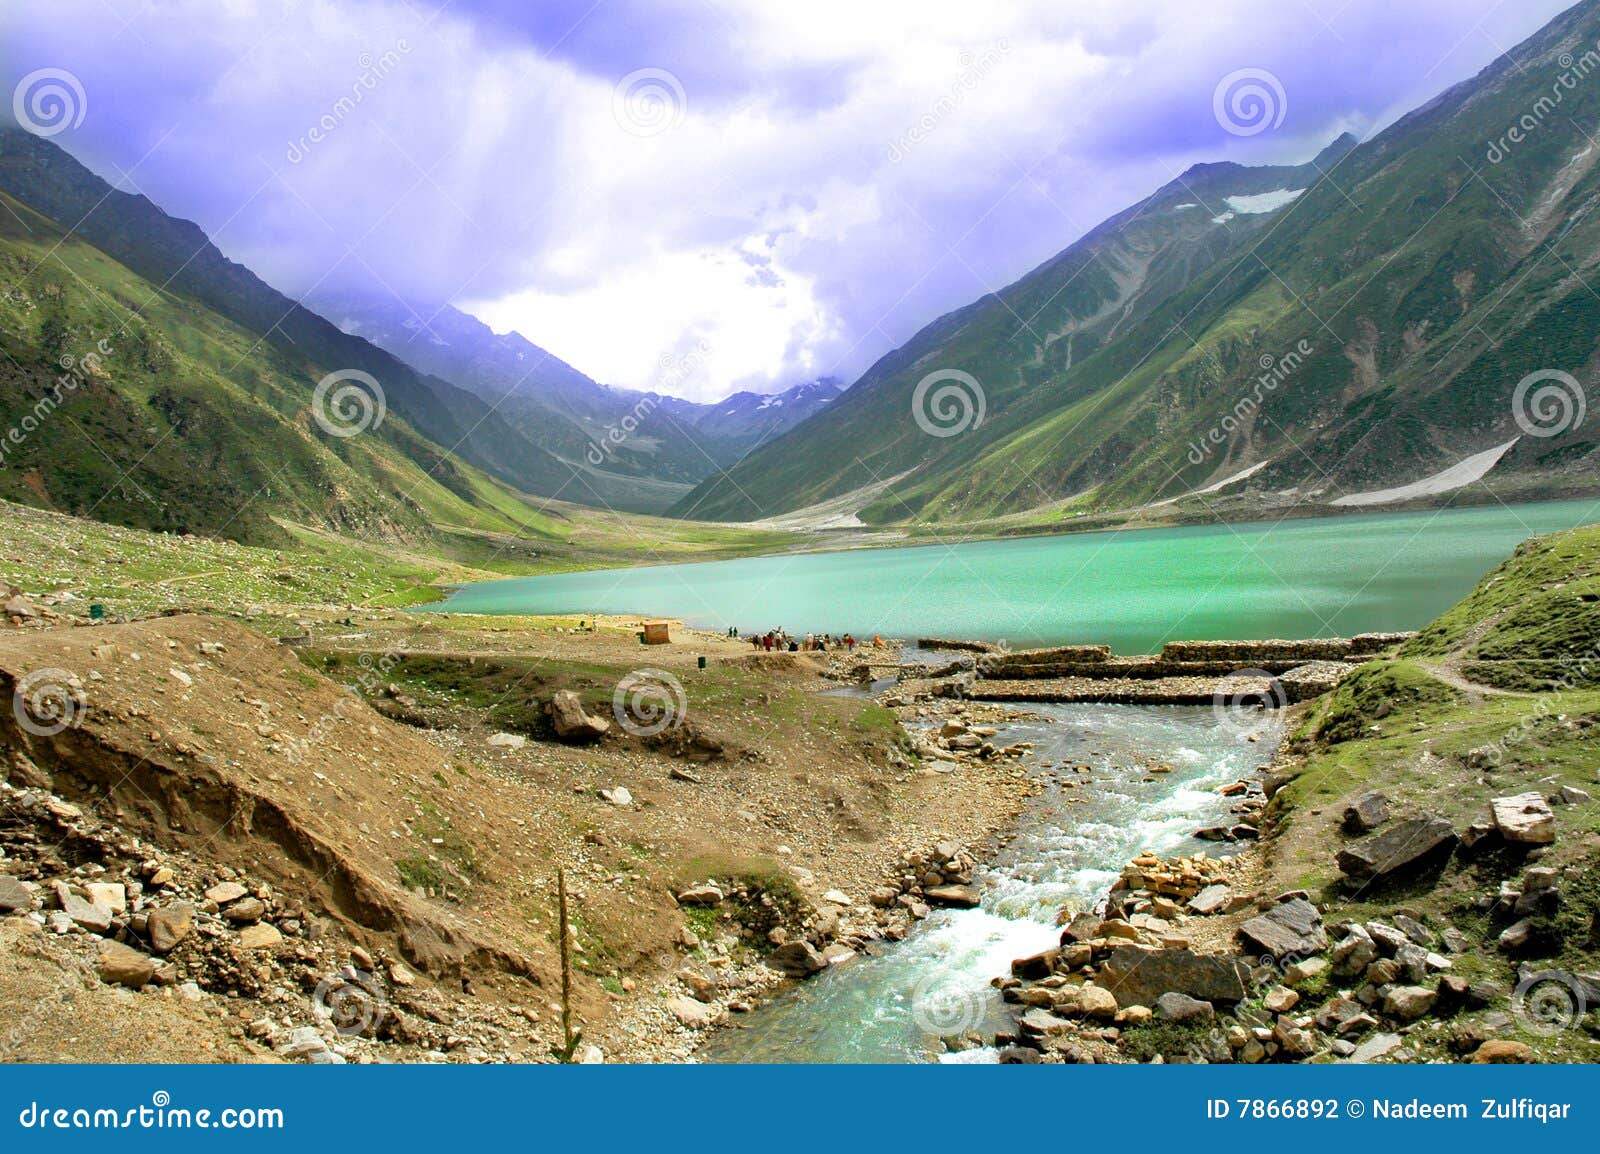 beautiful lake in pakistan